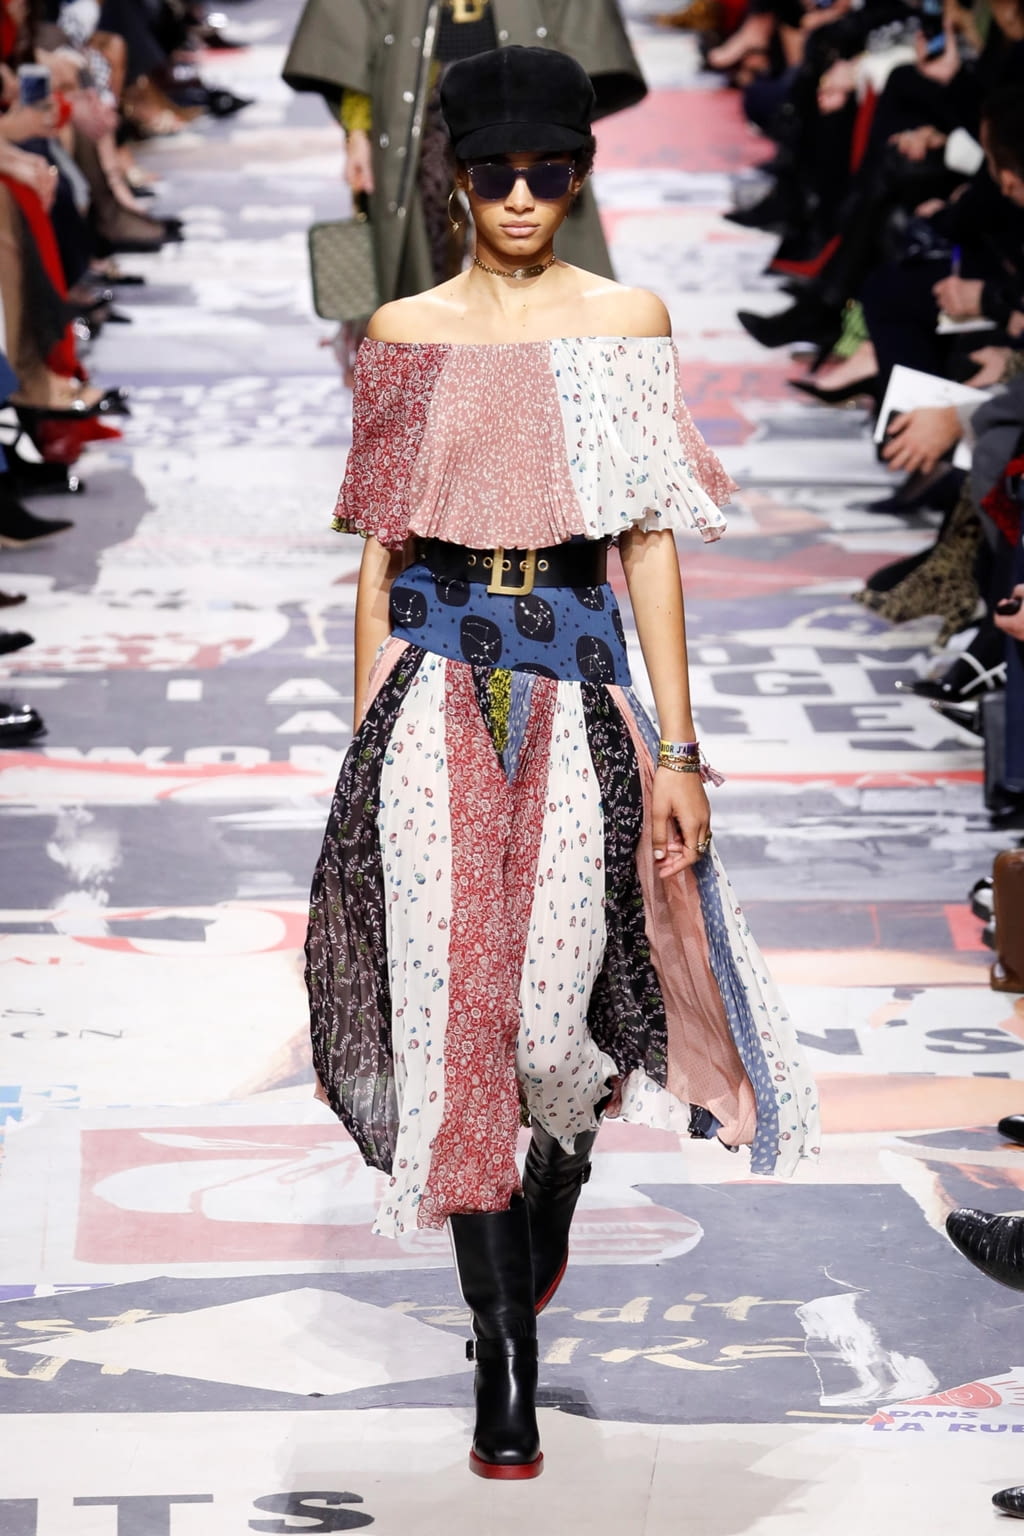 Christian Dior F/W 18 womenswear #45 - Tagwalk: The Fashion Search